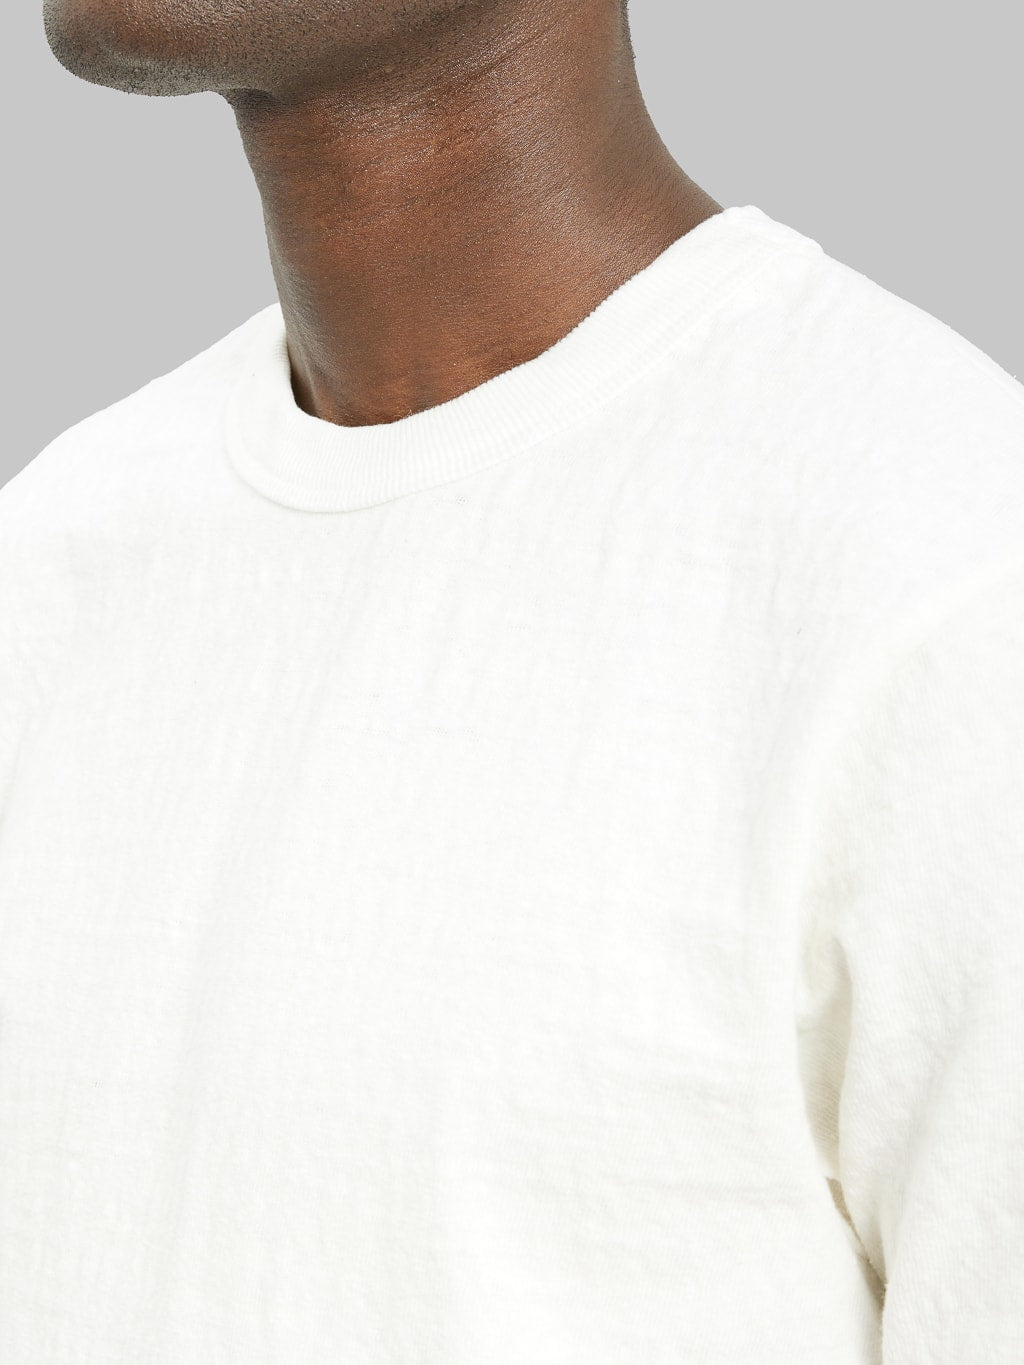 UES No 8 Slub Nep Short Sleeve Tshirt White reinforced collar